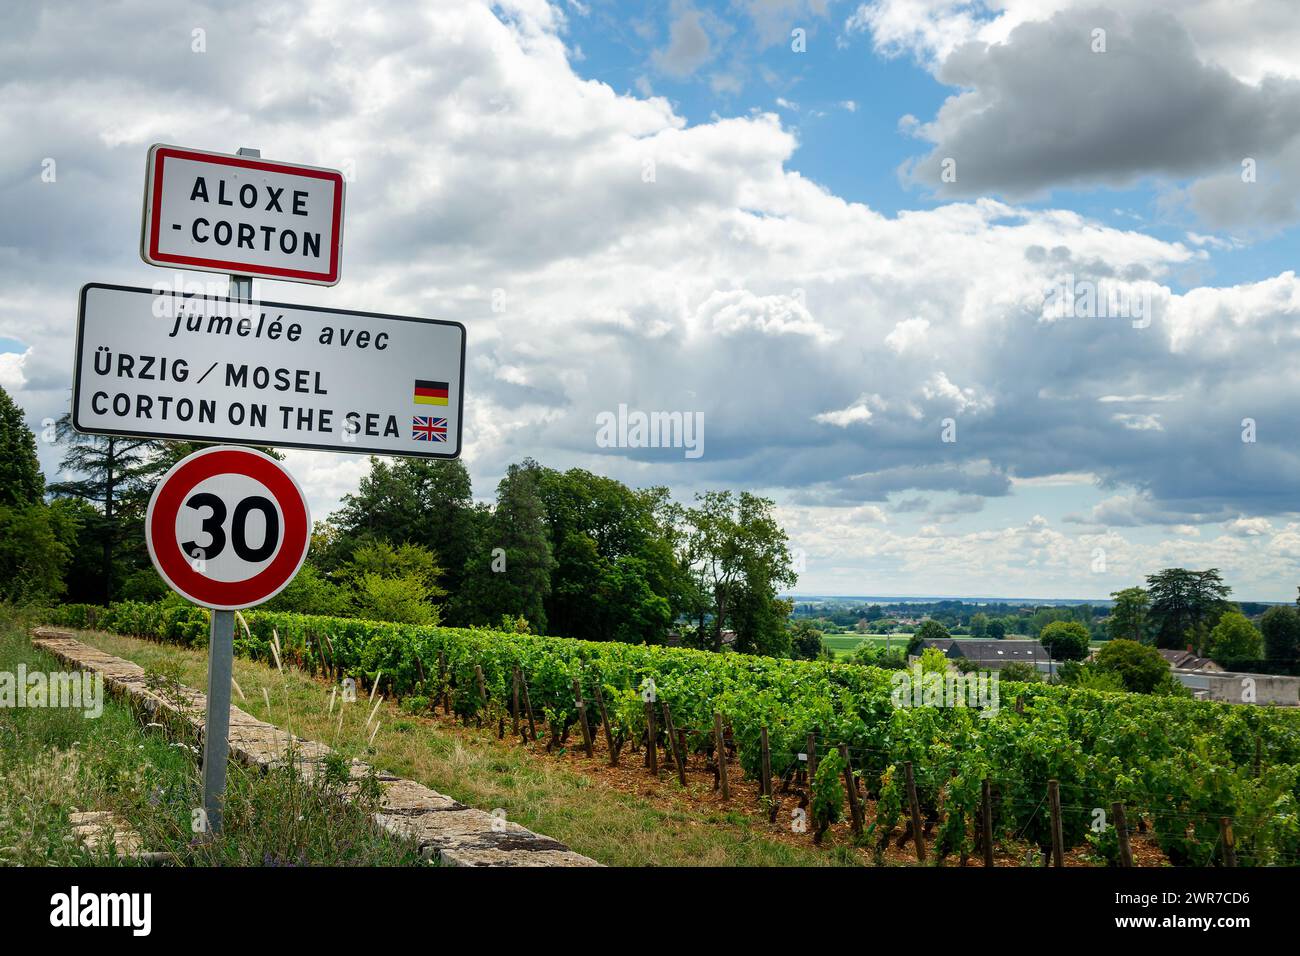 Village ville rodsign d'Aloxe Corton dans les vignes, Bourgogne, France Banque D'Images